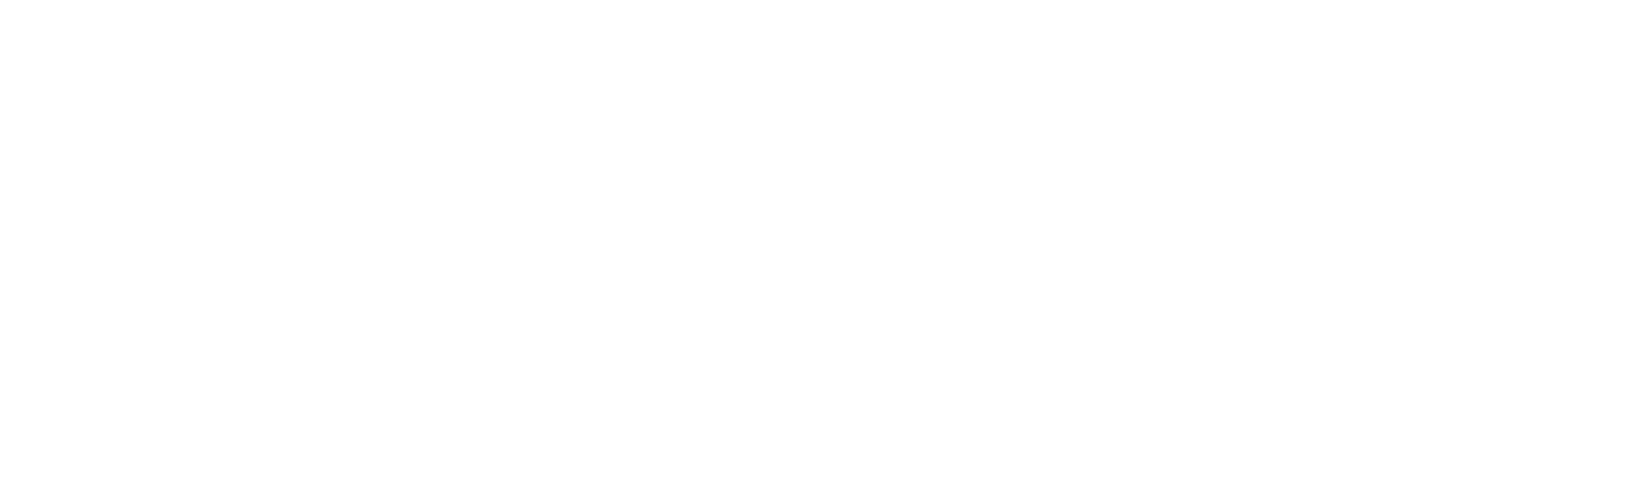 logo BFN